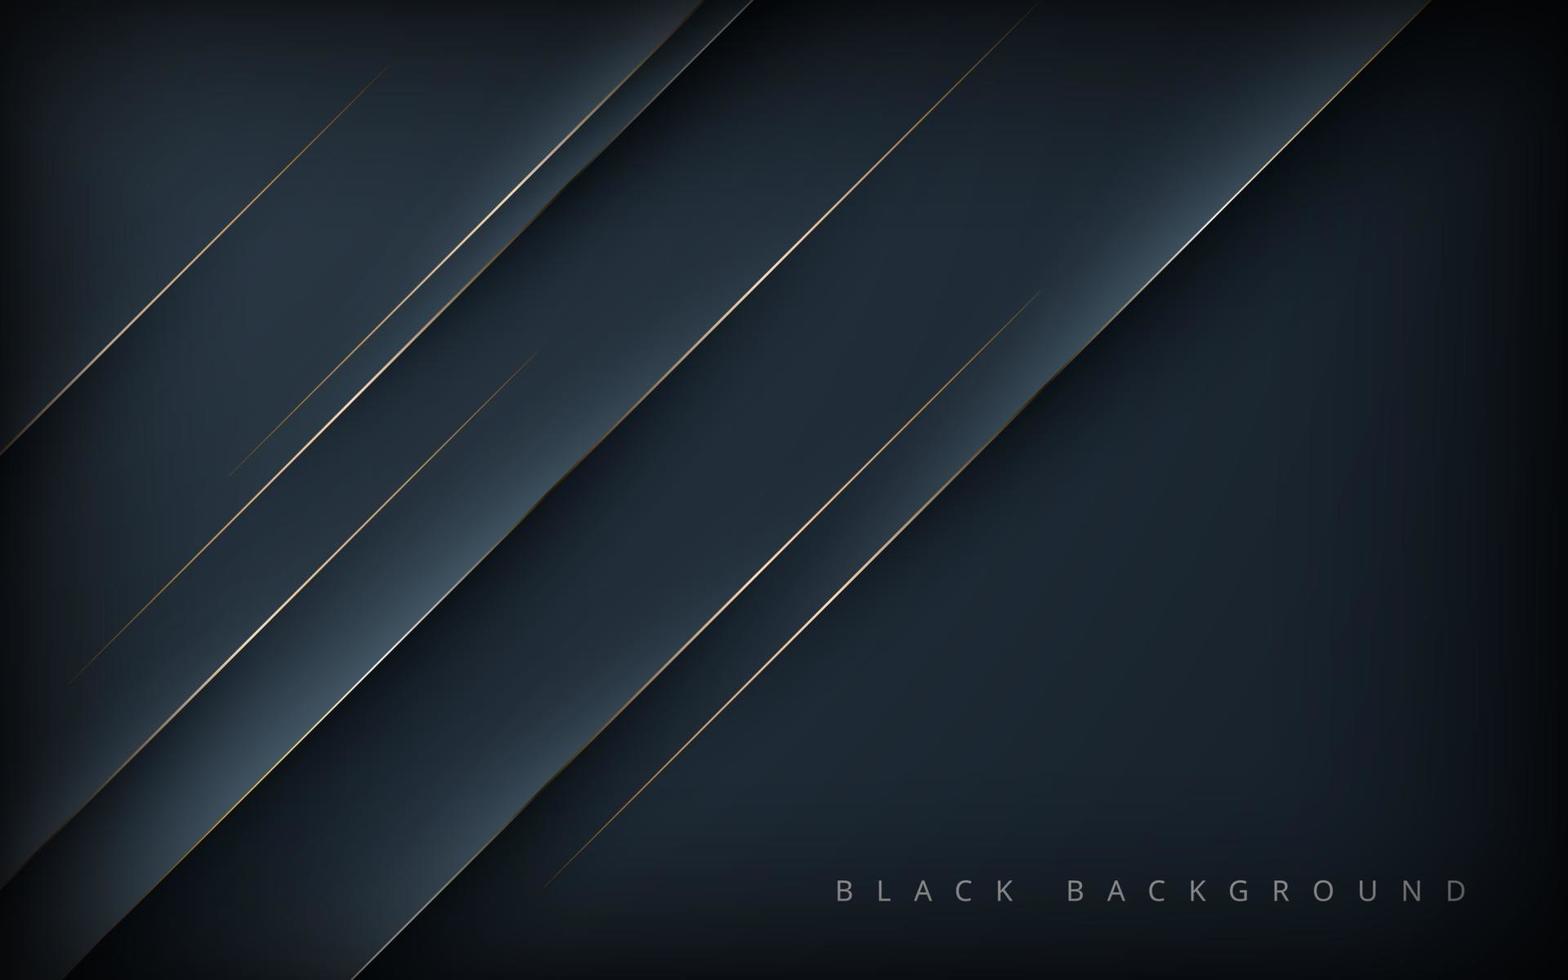 modern abstract zwart diagonaal vorm achtergrond met goud lijn samenstelling. eps10 vector